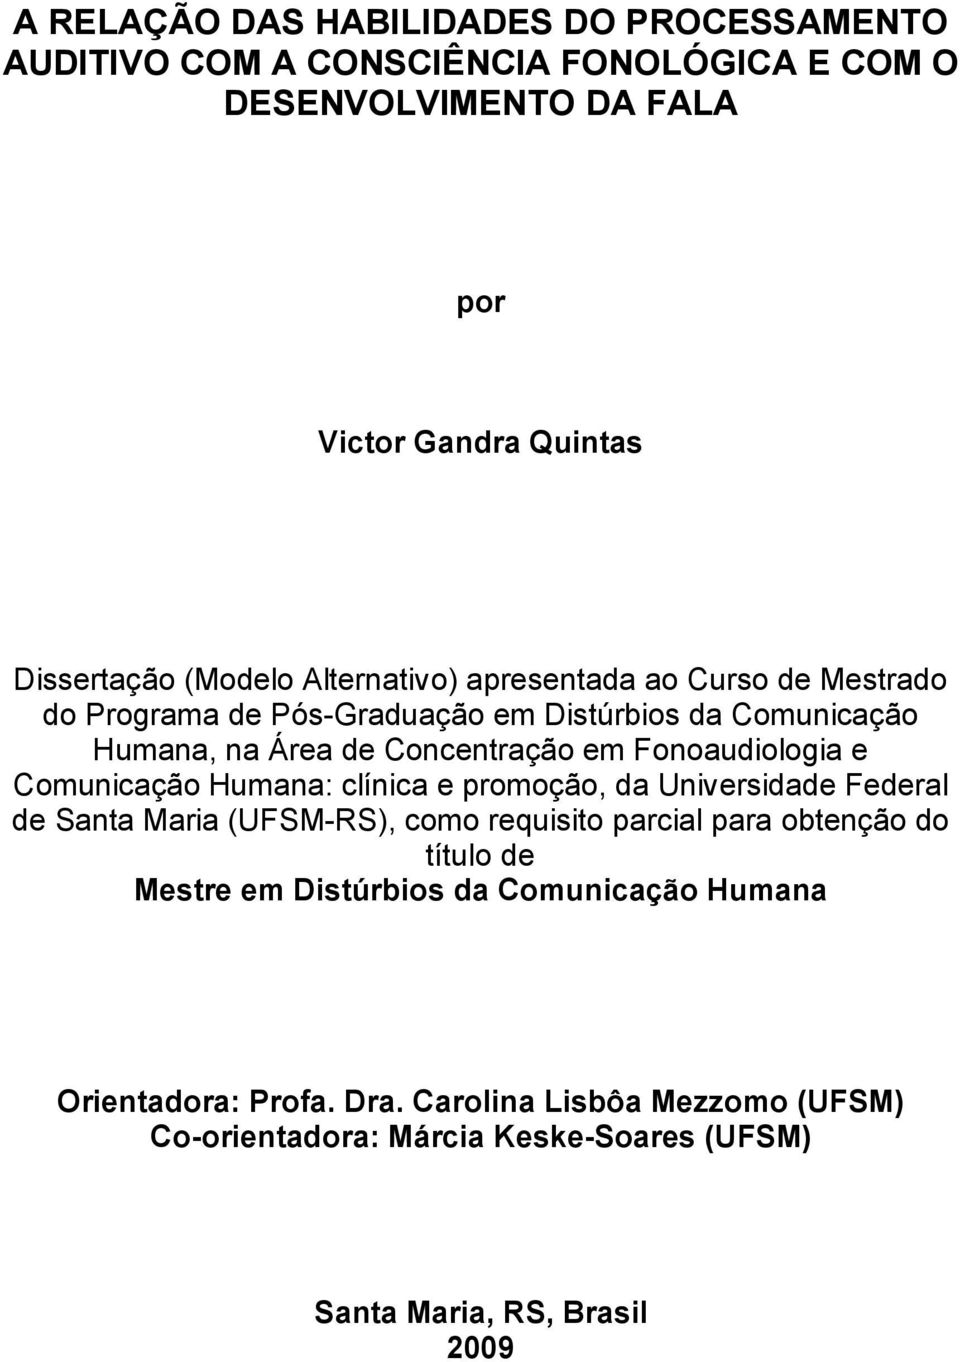 Fonoaudiologia e Comunicação Humana: clínica e promoção, da Universidade Federal de Santa Maria (UFSM-RS), como requisito parcial para obtenção do título de